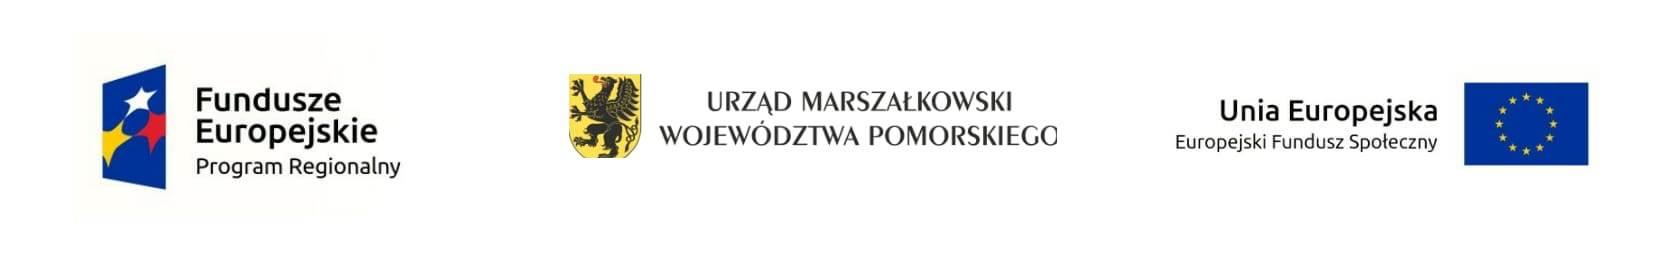 logotypy Fundusze Europejskie, Urząd Marszałkowski Województwa Pomorskiego i Unia Europejska